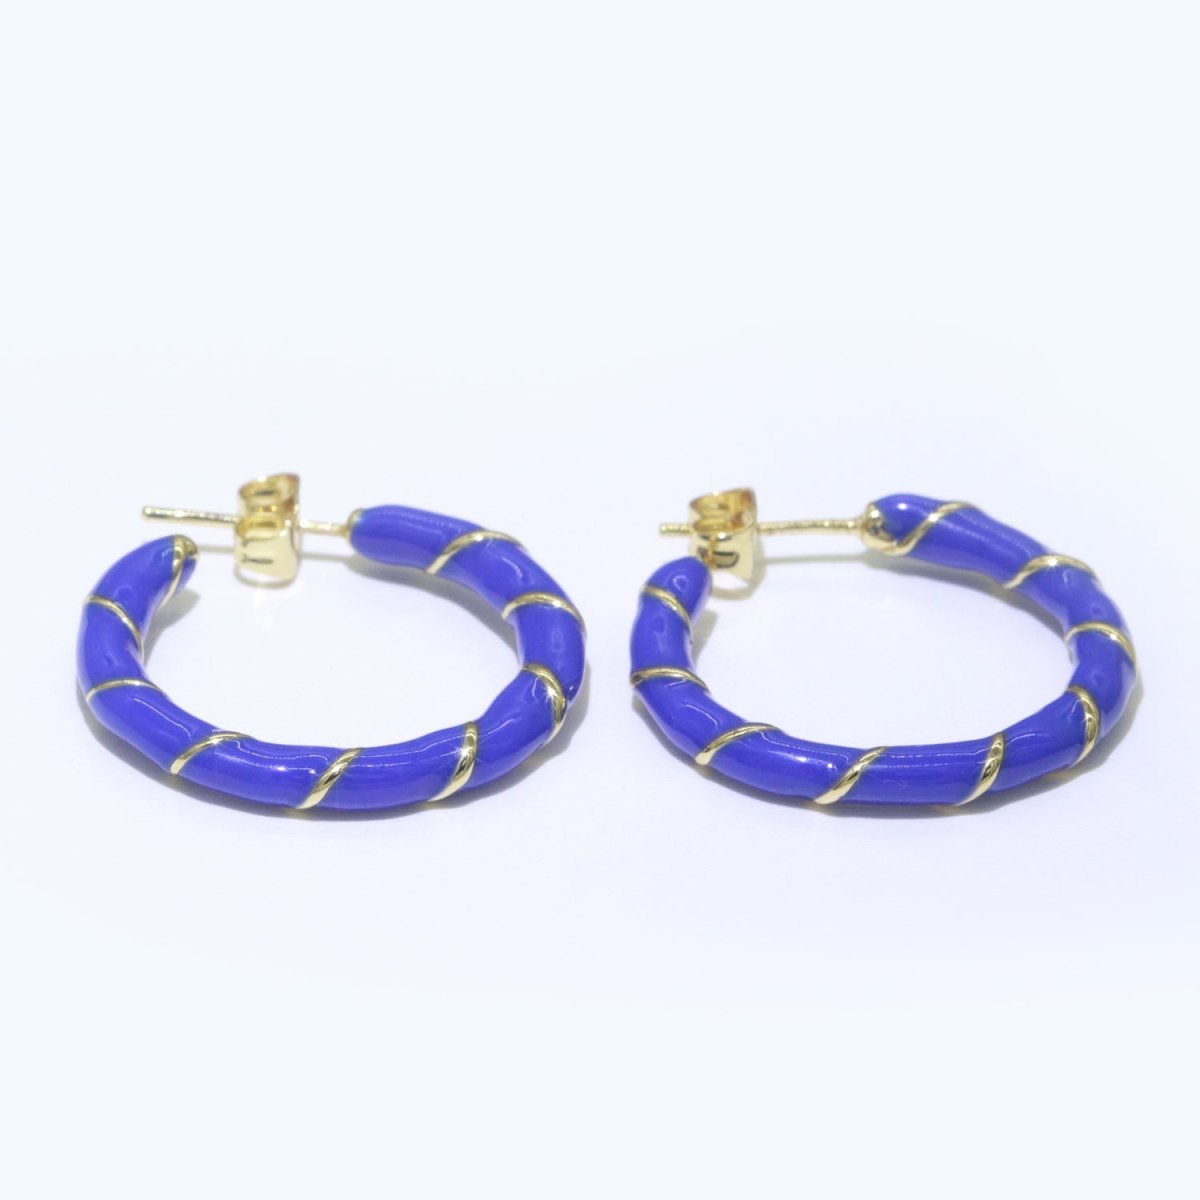 Dark Blue Enamel Hoop Earring with Gold Swirl 26mm Hoop earring Jewelry Gift T-002 - DLUXCA